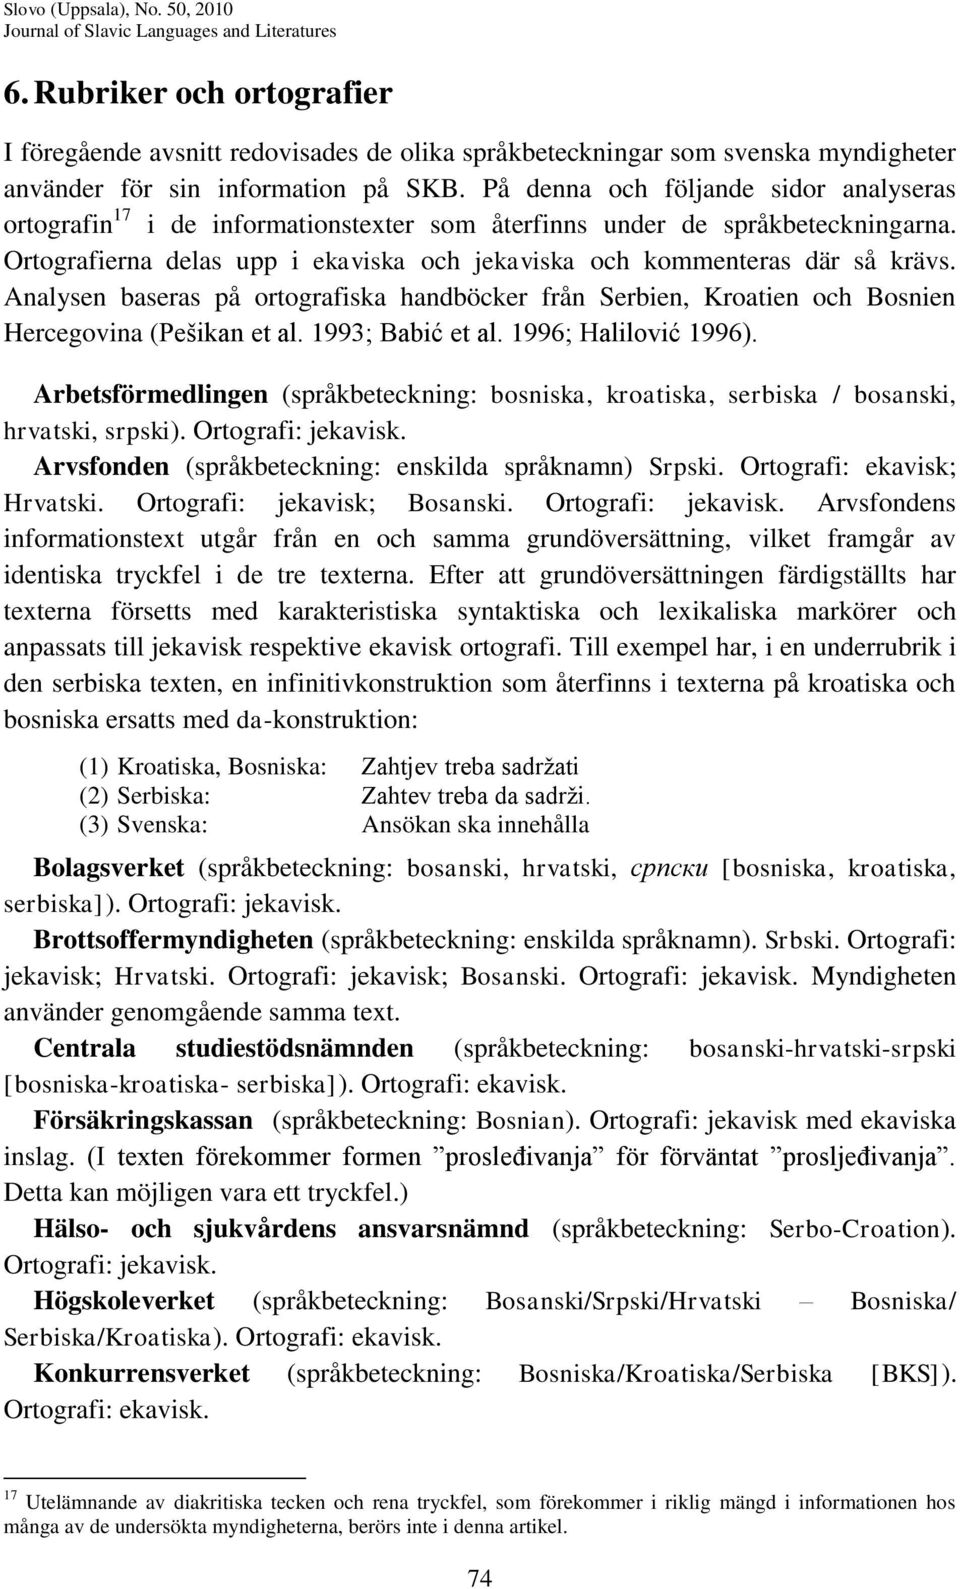 Analysen baseras på ortografiska handböcker från Serbien, Kroatien och Bosnien Hercegovina (Pešikan et al. 1993; Babić et al. 1996; Halilović 1996).